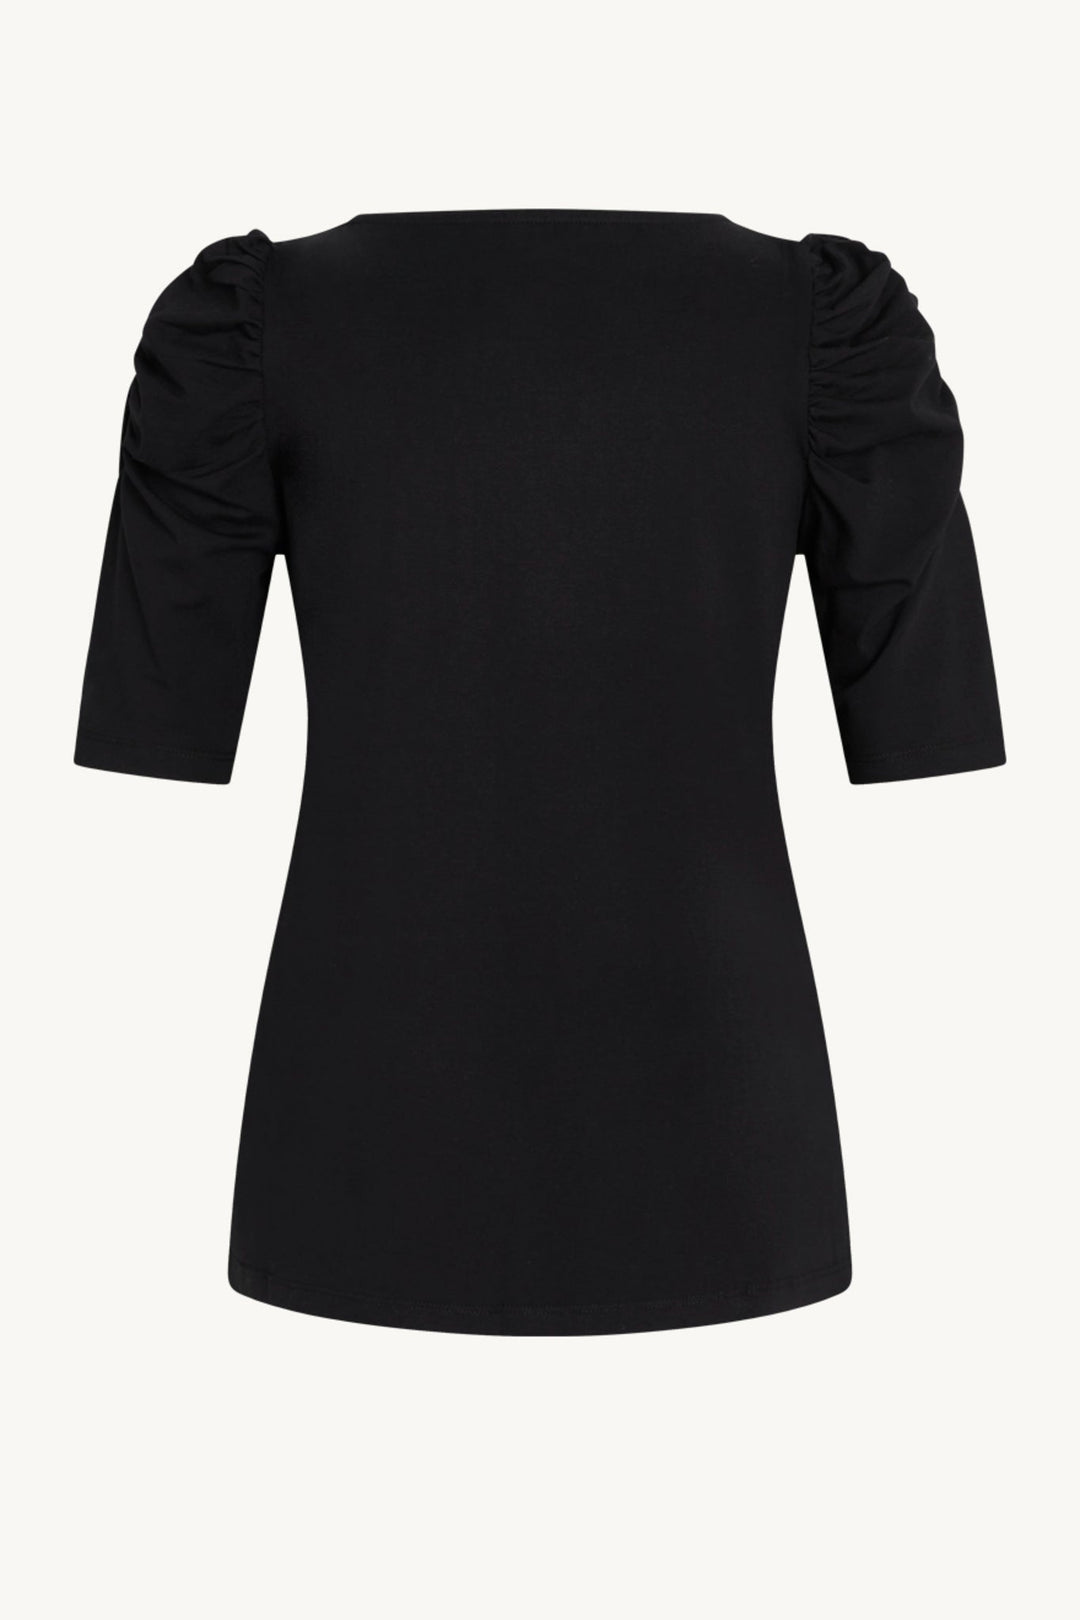 Adrienne-Cw T-Shirt Black | Skjorter og bluser | Smuk - Dameklær på nett